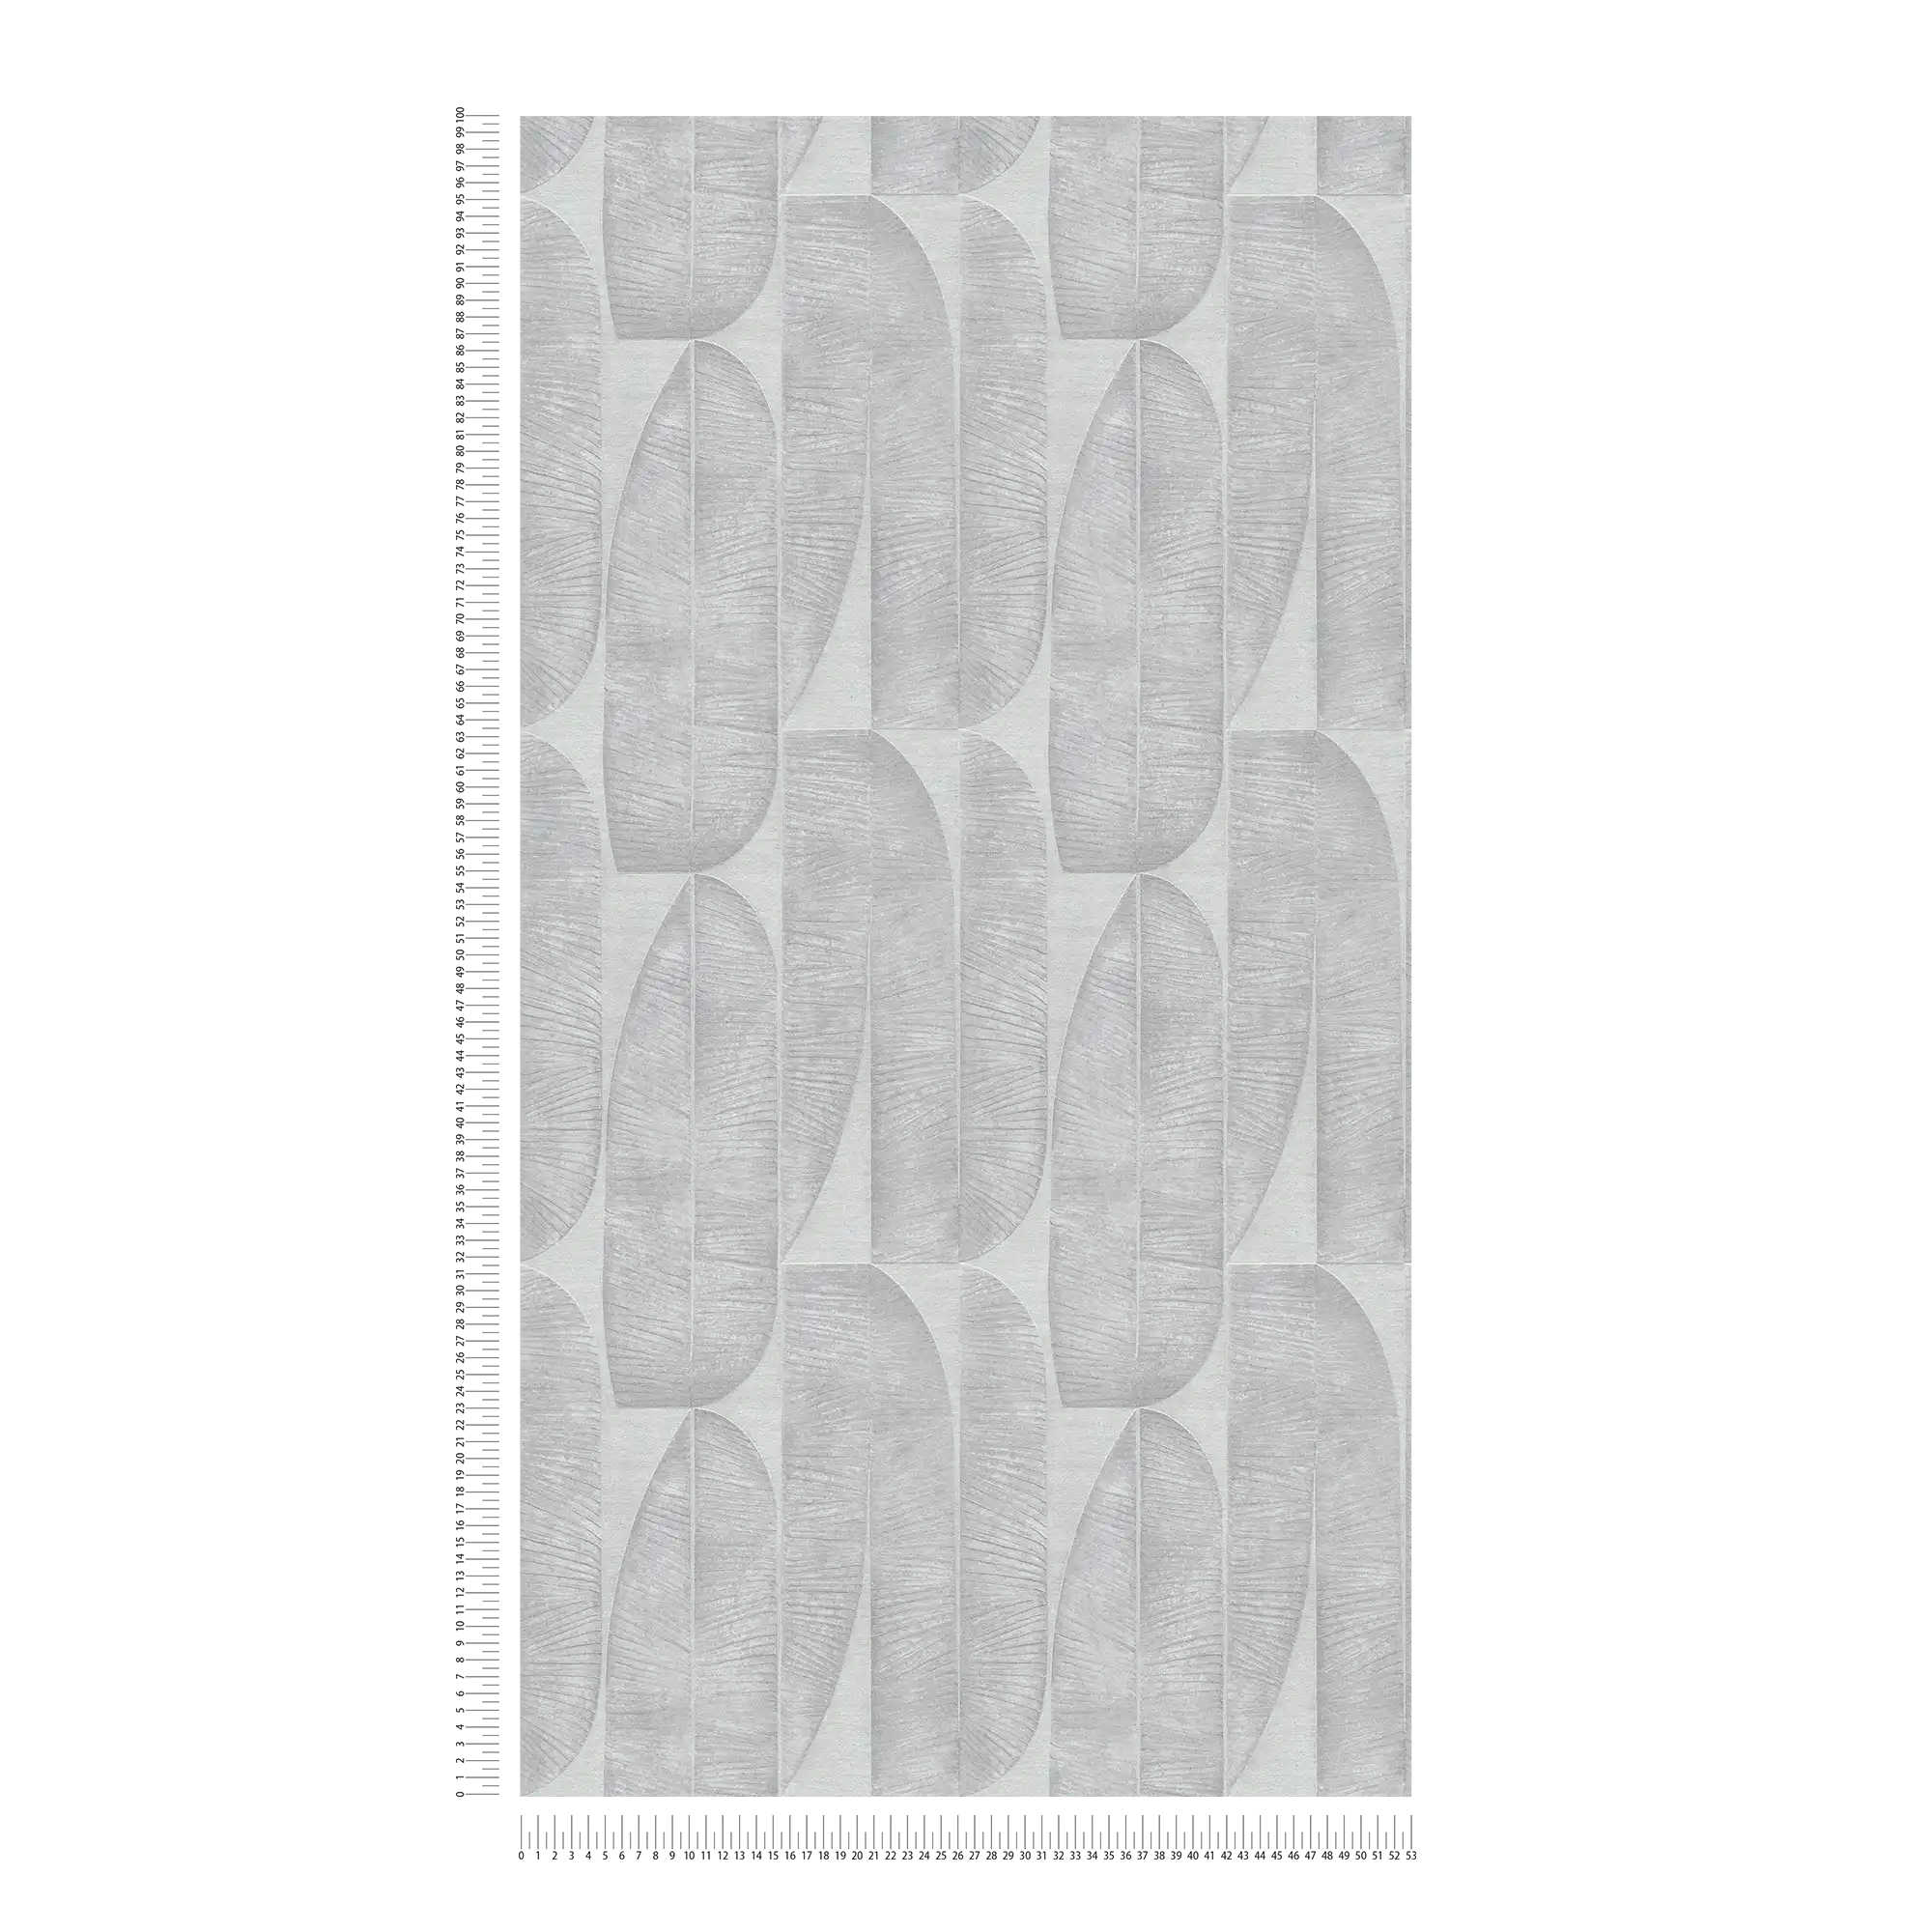             Onderlaag behang met geometrisch bladmotief - grijs
        